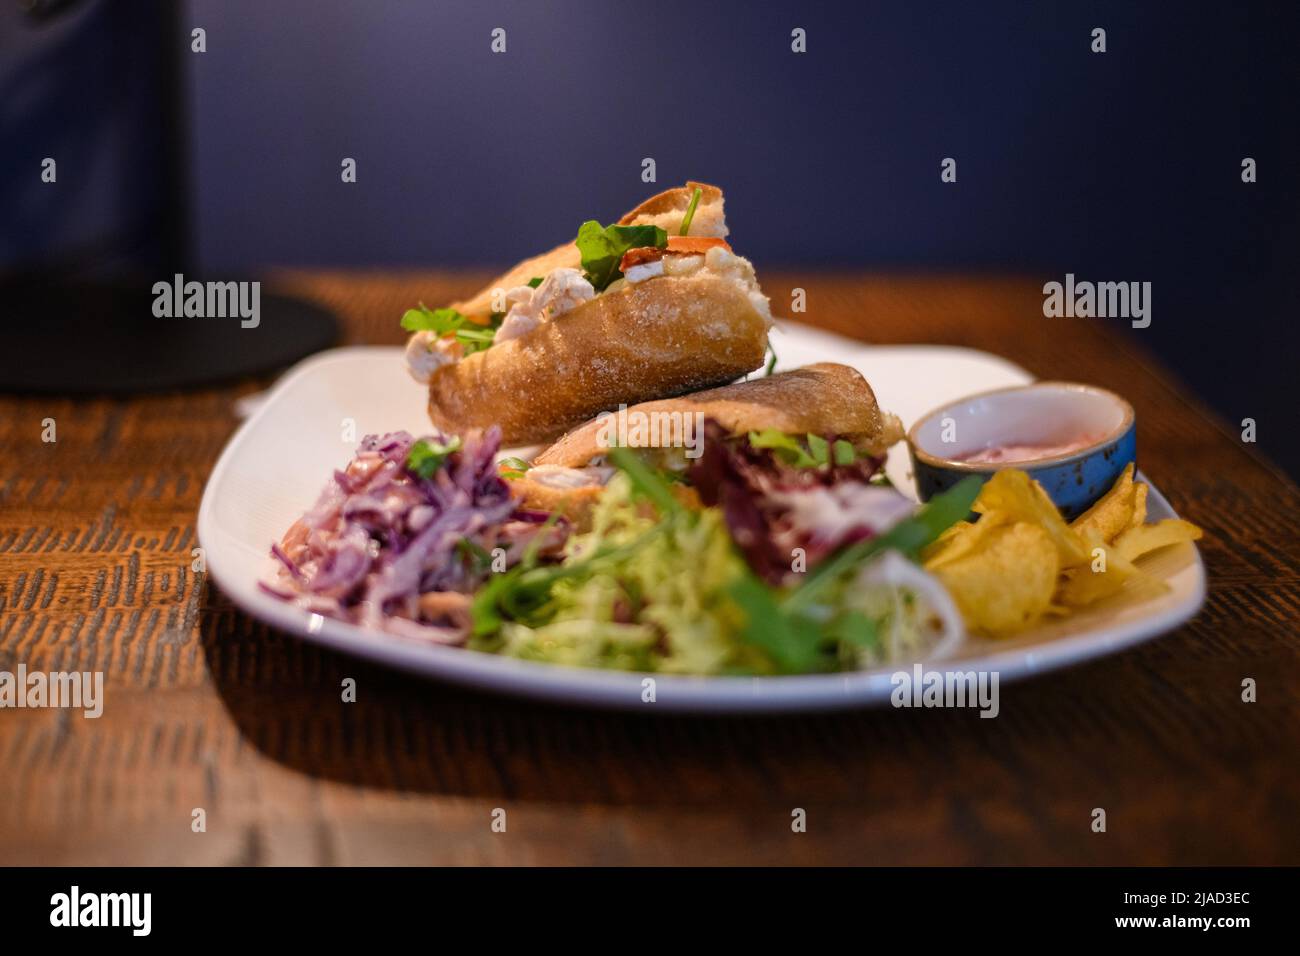 Primo piano di panini con pollo, brie e insalata con insalata di coleslaw, insalata verde e patatine Foto Stock